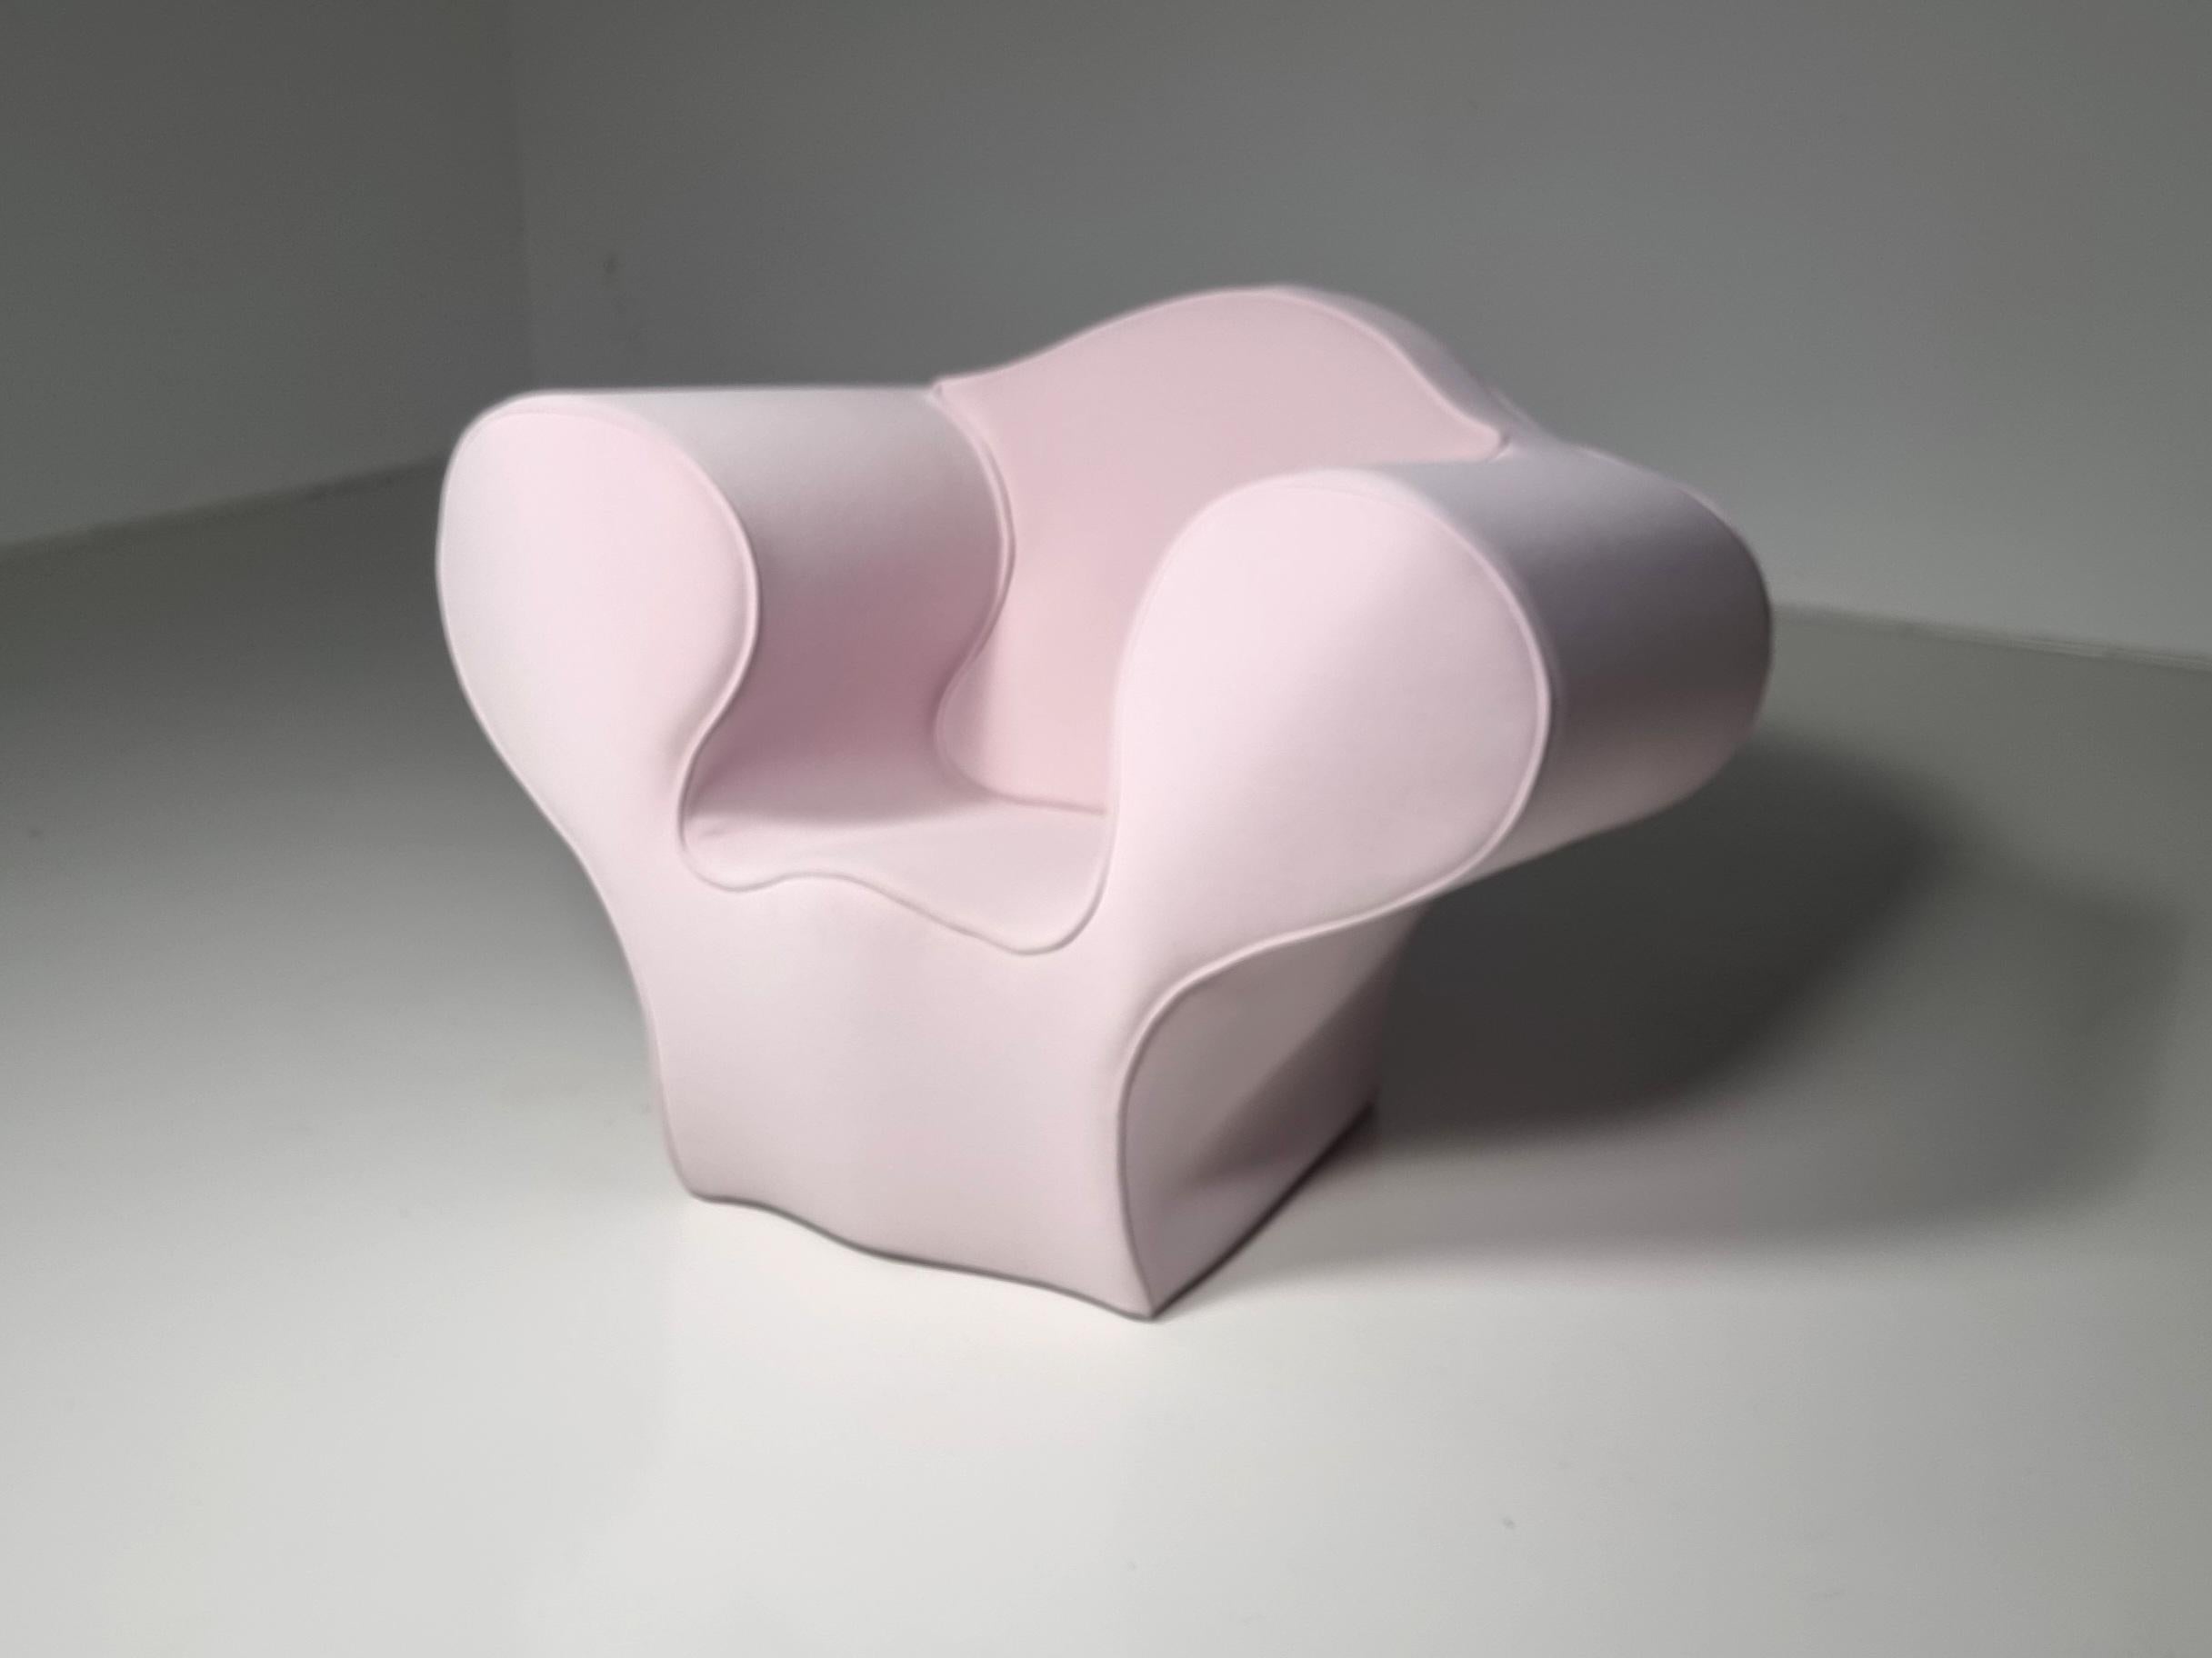 La collection big easy de Ron Arad a commencé par une chaise en acier conçue en 1988 et a depuis été déclinée sous d'autres formes en réinterprétant les matériaux et les processus de production. Cette fantastique chaise sculpturale, qui attire tous